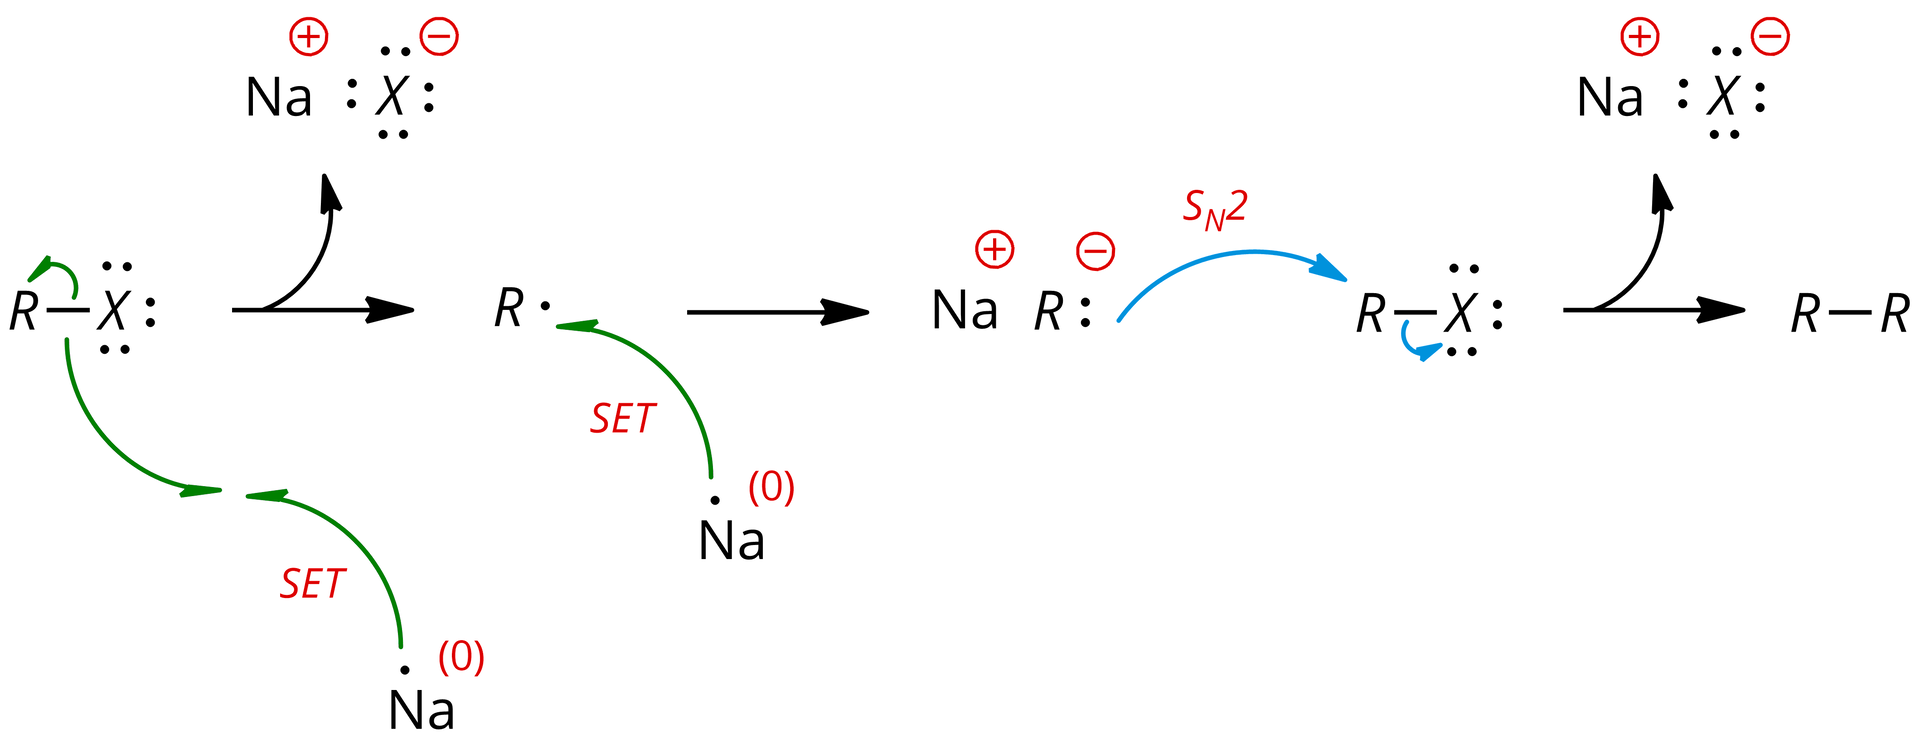 Ilustracja przedstawiająca mechanizm reakcji . Cząsteczka halogenku alkilowego zbudowanego z podstawnika R połączonego za pomocą wiązania pojedynczego z atomem X posiadającym trzy wolne pary elektronowe zaznaczone w postaci trzech par kropek. Poniżej znajduje się atom sodu Na na zerowym stopniu utlenienia z zaznaczonym niesparowanym elektronem, od którego poprowadzona jest łukowata strzałka z połową grotu opisana jako SET. Do grotu owej strzałki poprowadzona jest druga łukowata strzałka z połową grotu od wiązania łączącego atom X z podstawnikiem R; od wspomnianego wiązania poprowadzono również łukowatą strzałkę z połową grotu do podstawnika R. W wyniku transferu elektronu powstaje cząsteczka soli Na+X-, przy czym przy anionie zaznaczono cztery wolne pary elektronowe. Ponadto produktem jest rodnik alkilowy oznaczony jako R z kropką, czyli z niesparowanym elektronem, do którego poprowadzona jest łukowata strzałka z połową grotu od elektronu z kolejnego atomu sodu na zerowym stopniu utlenienia. Strzałka również została opisana jako SET, co oznacza transfer elektronu. Strzałka w prawo. Za strzałką związek zbudowany z kationu sodu Na+ oraz z anionu R-, przy którym zaznaczono wolną parę elektronową w postaci pary kropek, od której poprowadzona jest łukowata strzałka z pełnym grotem opisana jako S N 2. Strzałka skierowana jest do podstawnika R w drugiej cząsteczce halogenku alkilowego, w której to od wiązania pojedynczego łączącego podstawnik R z atomem X z zaznaczonym trzema wolnymi parami elektronowymi poprowadzona jest kolejna łukowata strzałka do atomu X w owej cząsteczce. Strzałka w prawo, w wyniku reakcji powstaje cząsteczka zbudowana z dwóch podstawników R połączonych wiązaniem pojedynczym oraz cząsteczka soli Na+X-.